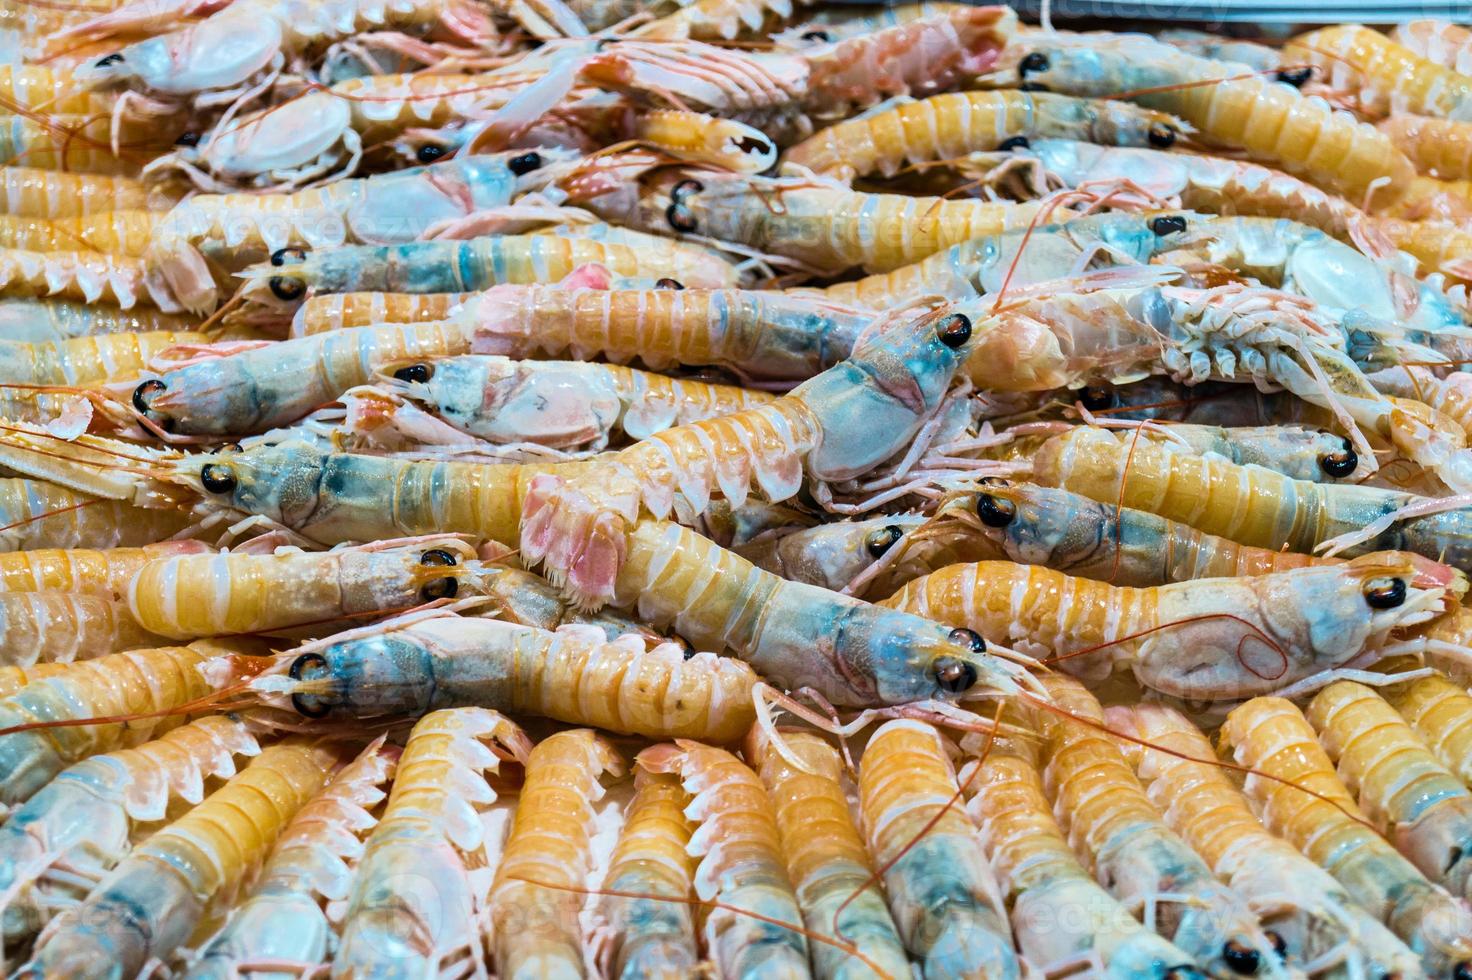 Camarones y langosta en un mercado de pescado español foto